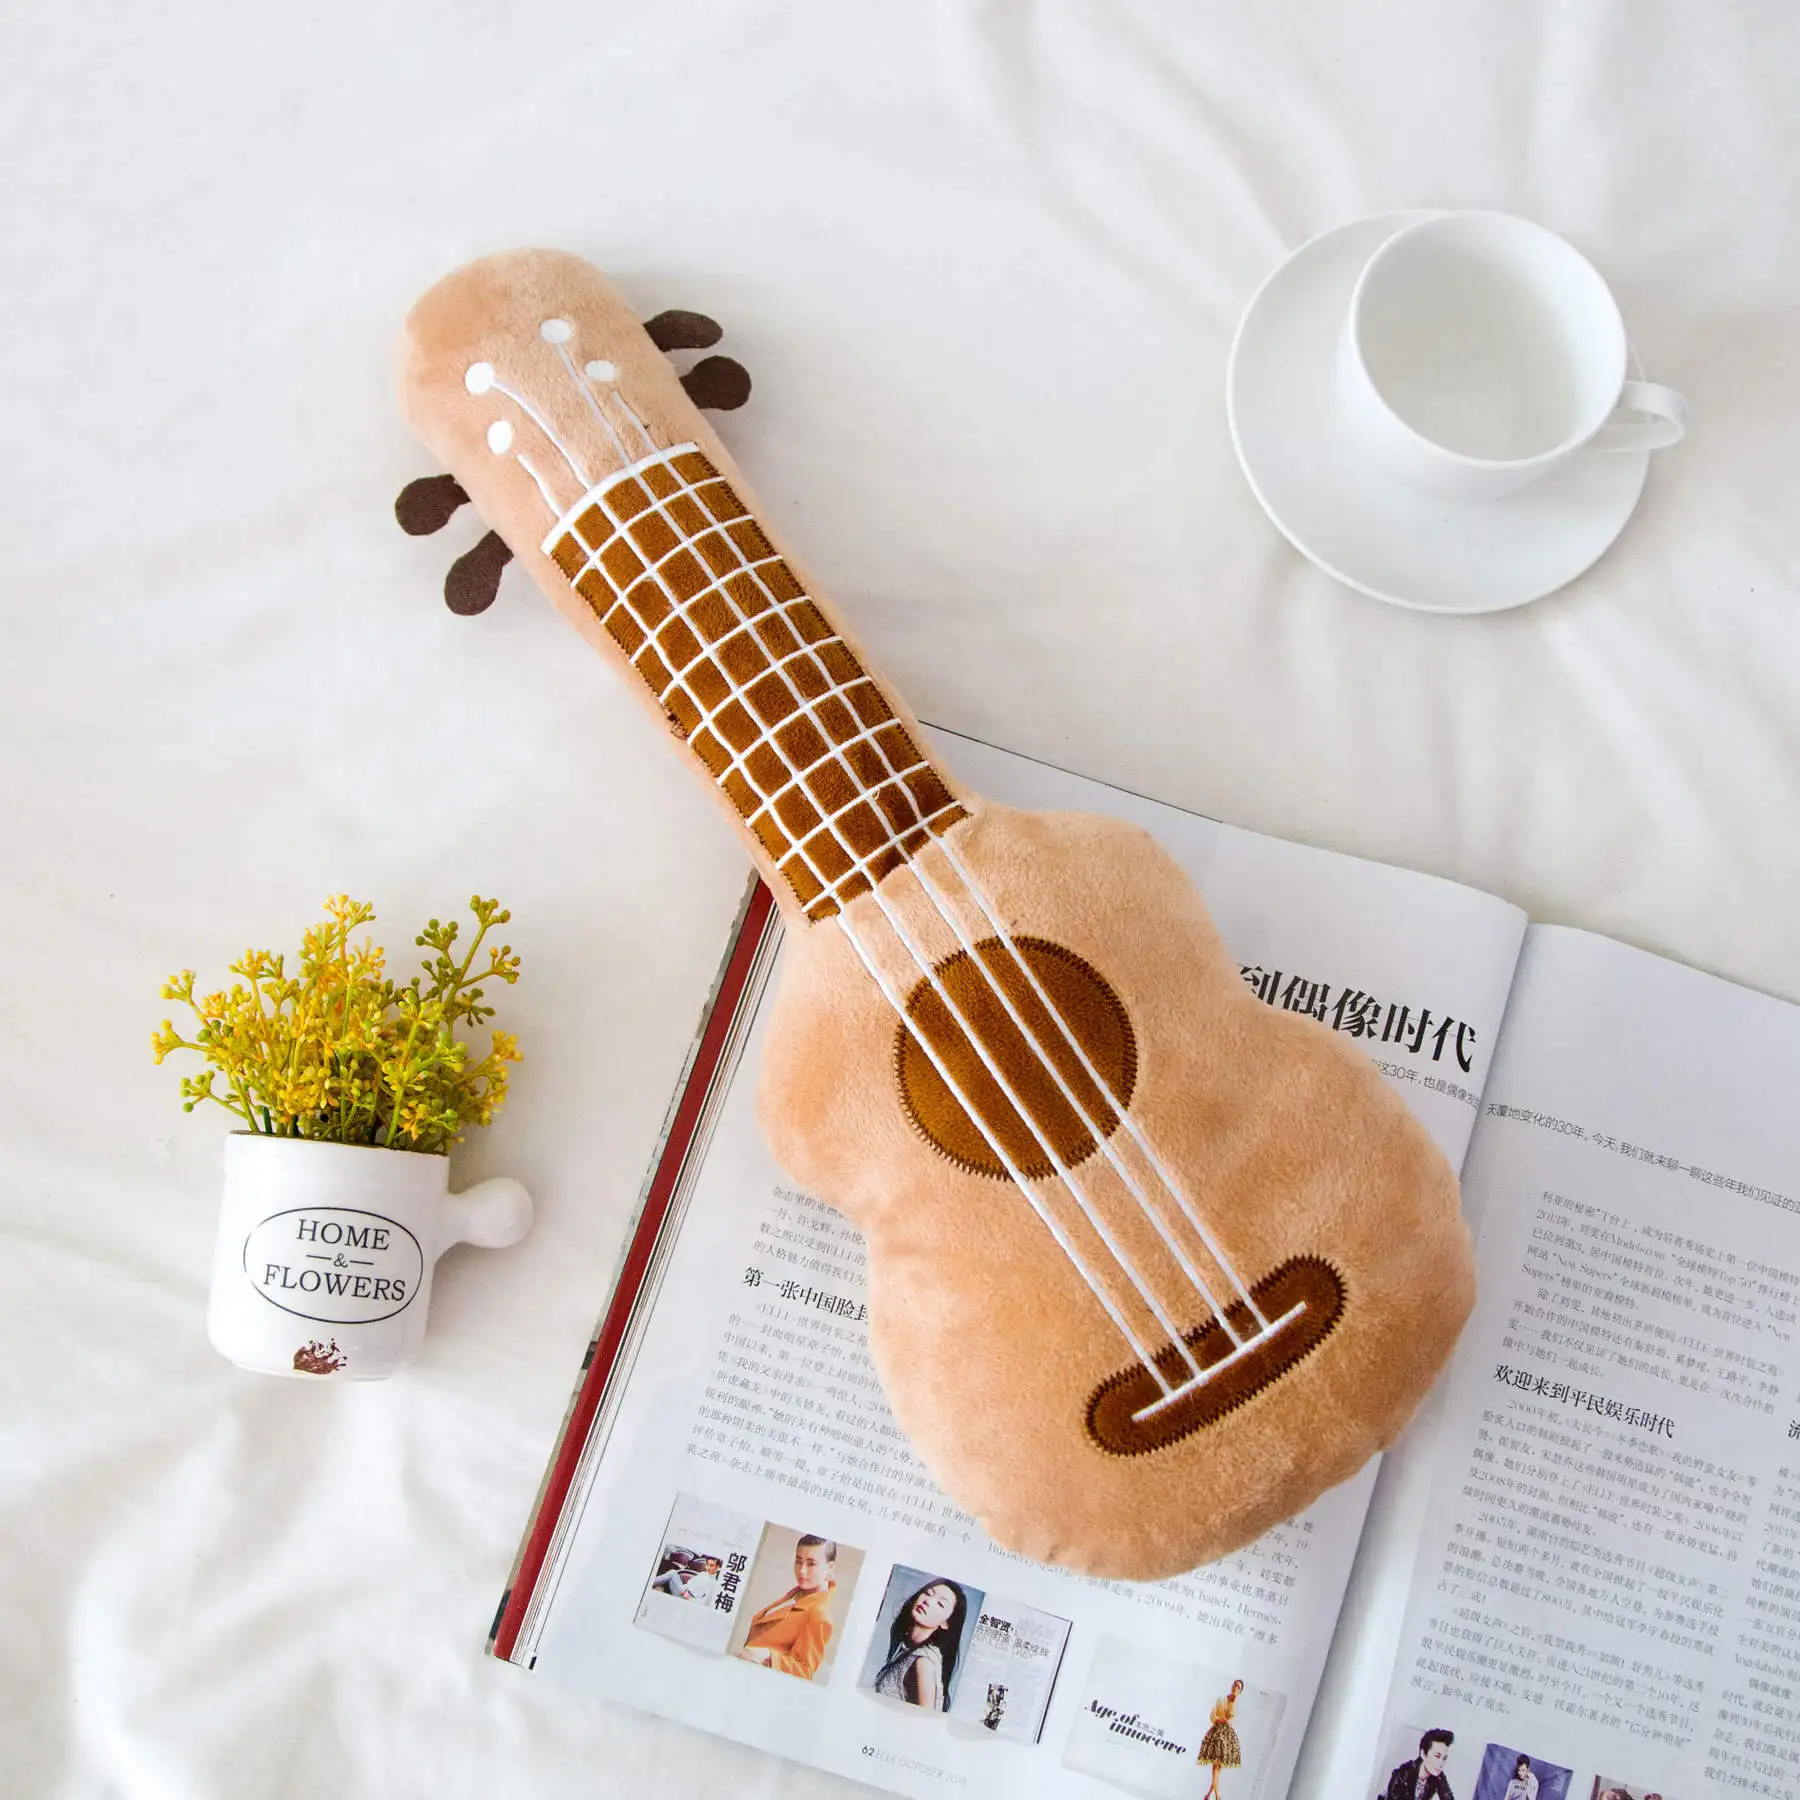 Моделирование 3D гитара плюшевая игрушка мягкая подушка модное милое украшение для дома текстиль постельные принадлежности подушки девушка подарок на день рождения Рождество - Цвет: Оранжевый